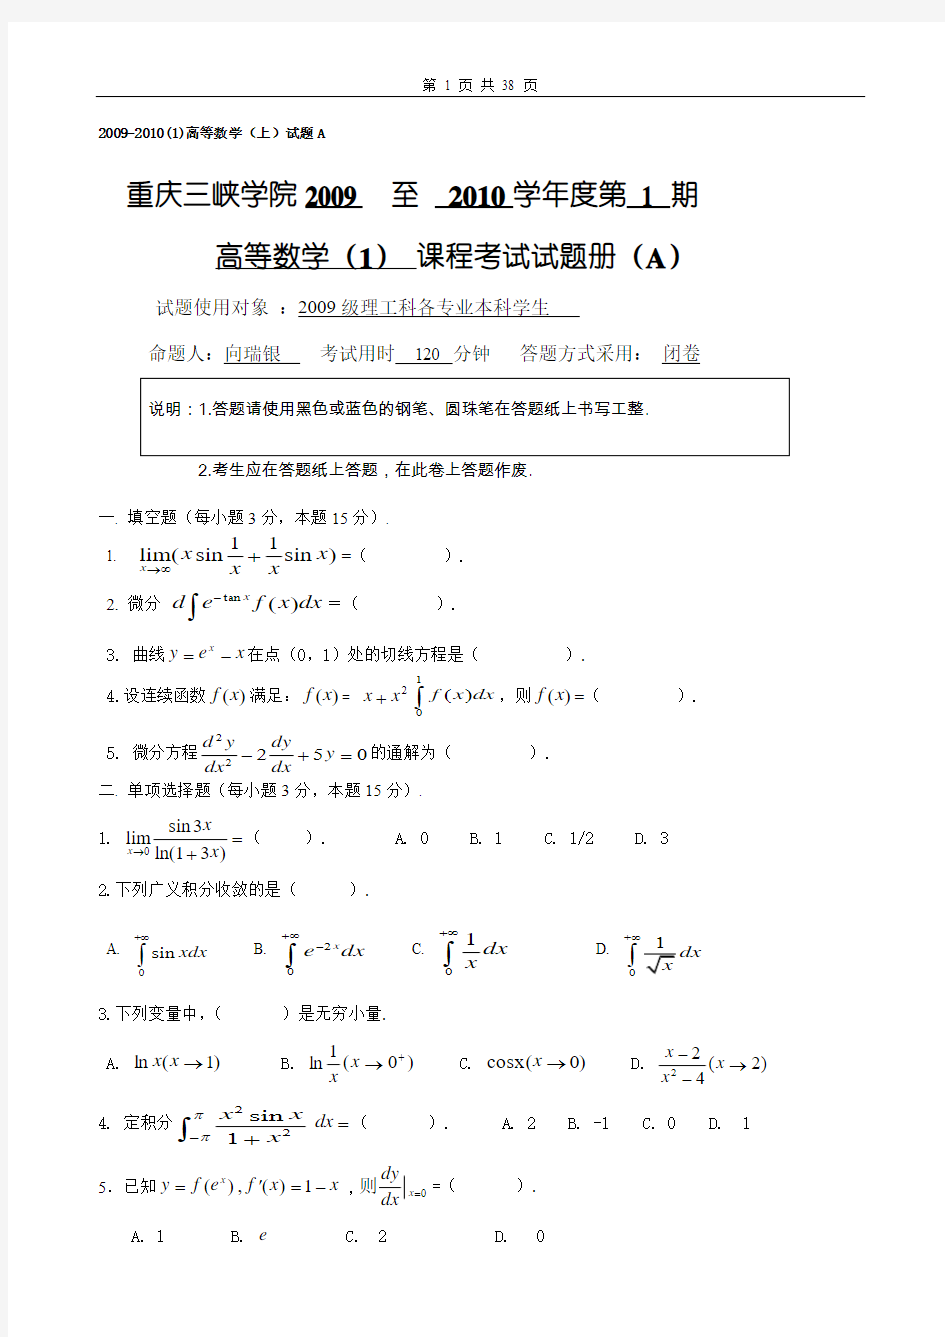 高等数学I_重庆三峡学院历年考试题及答案20121212整理